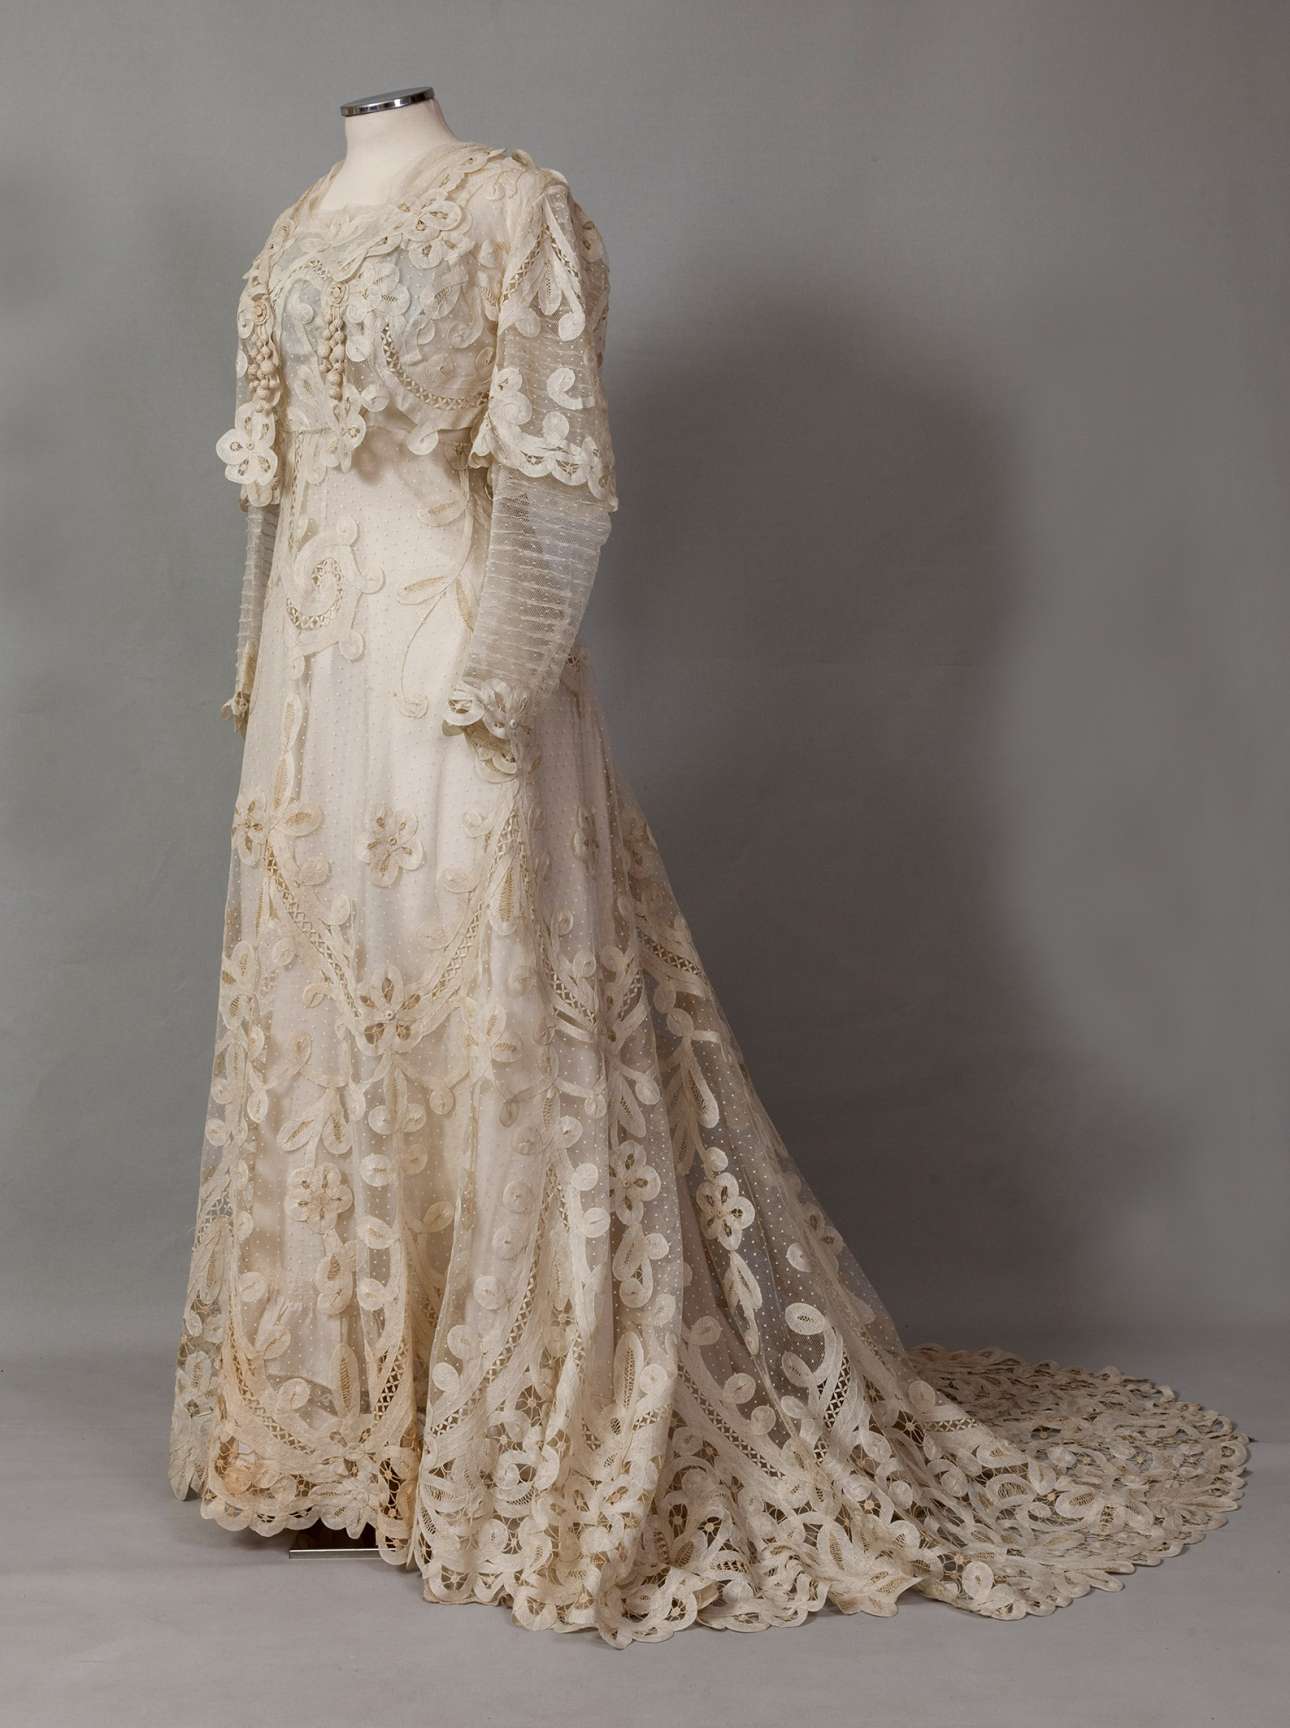 Νυφικό φόρεμα με ουρά από υπόλευκο τούλι και δαντέλα. Φορέθηκε από την Όλγα Κούρτελη στον γάμο της με τον Γιώργο Αντωνιάδη στην Κωνσταντινούπολη το 1898. Δωρεά: Έλλη Σολομωνίδου-Μπαλάνου (Συλλογή ΠΛΙ)